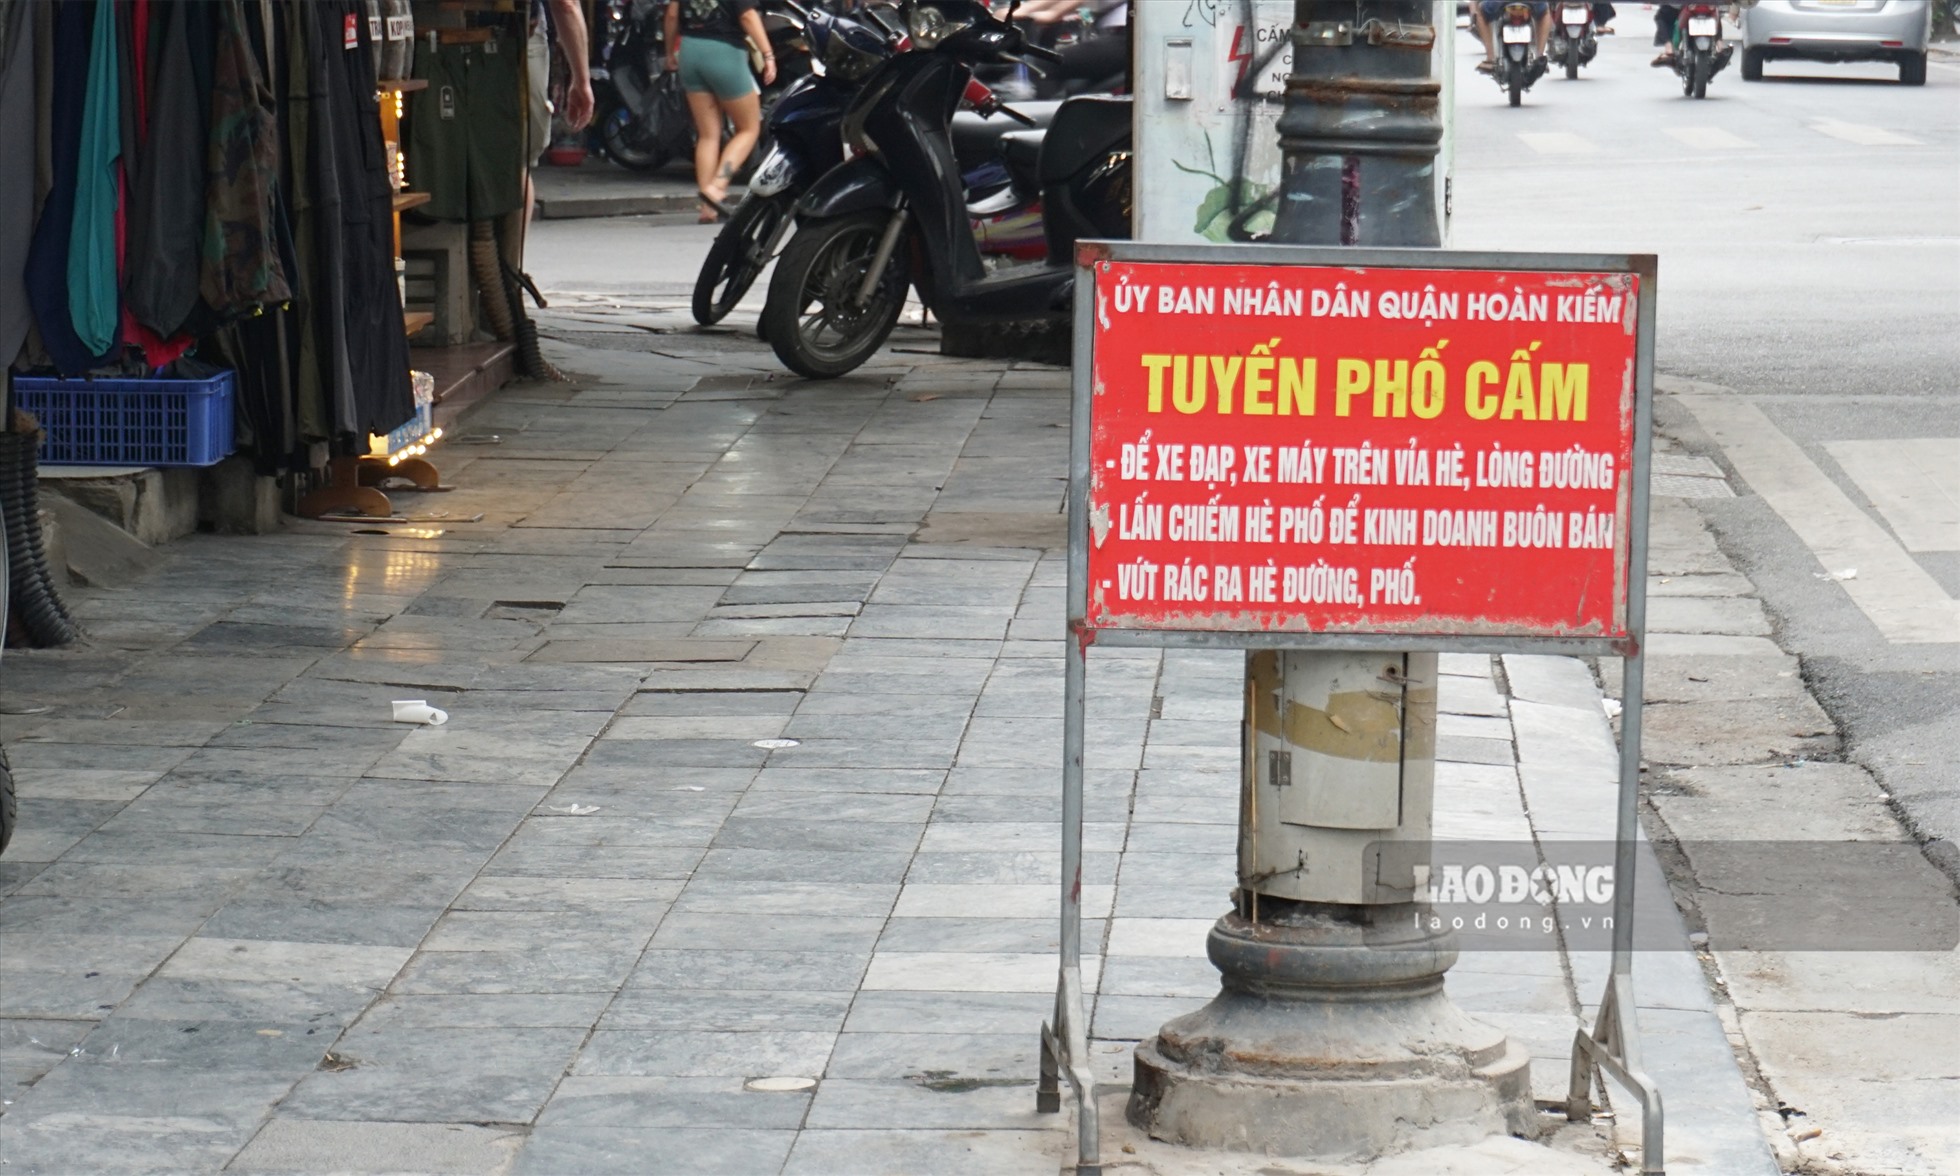 Biển cấm kinh doanh và buôn bán trên vỉa hè được dựng tại phố Hàng Đào.